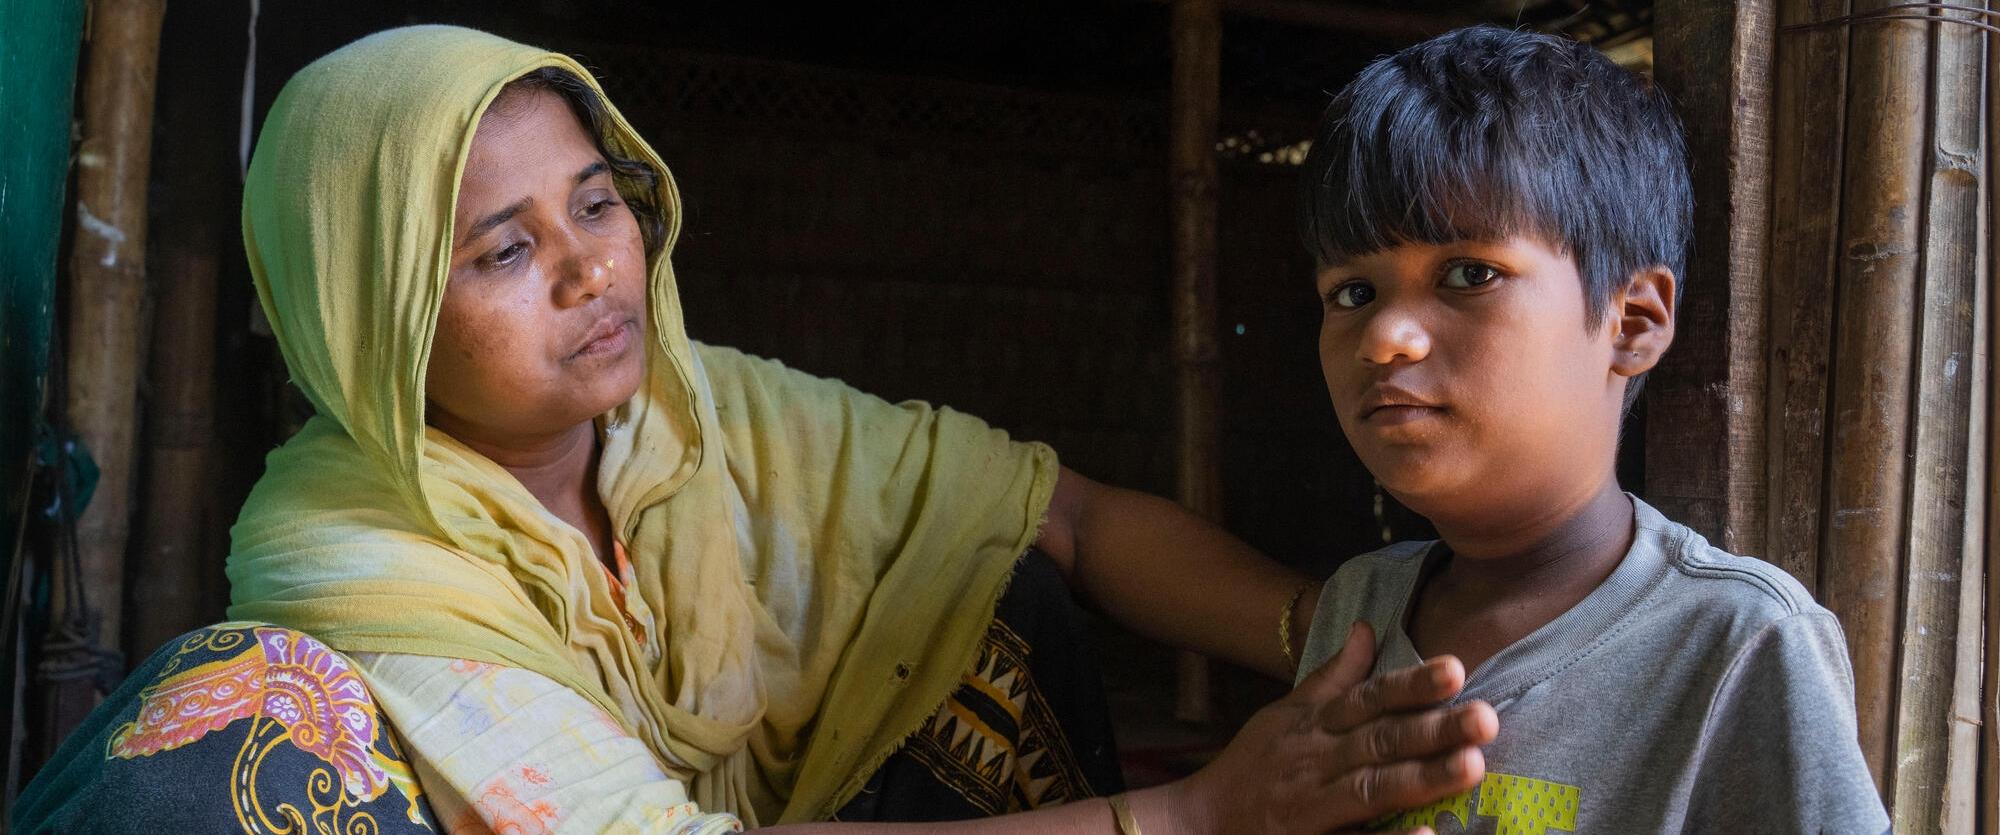 Tayeba Begum, réfugiée rohingya mère de jumelles souhaite pouvoir retourner au Myanmar si sa sécurité et celle de ses enfants sont garanties.